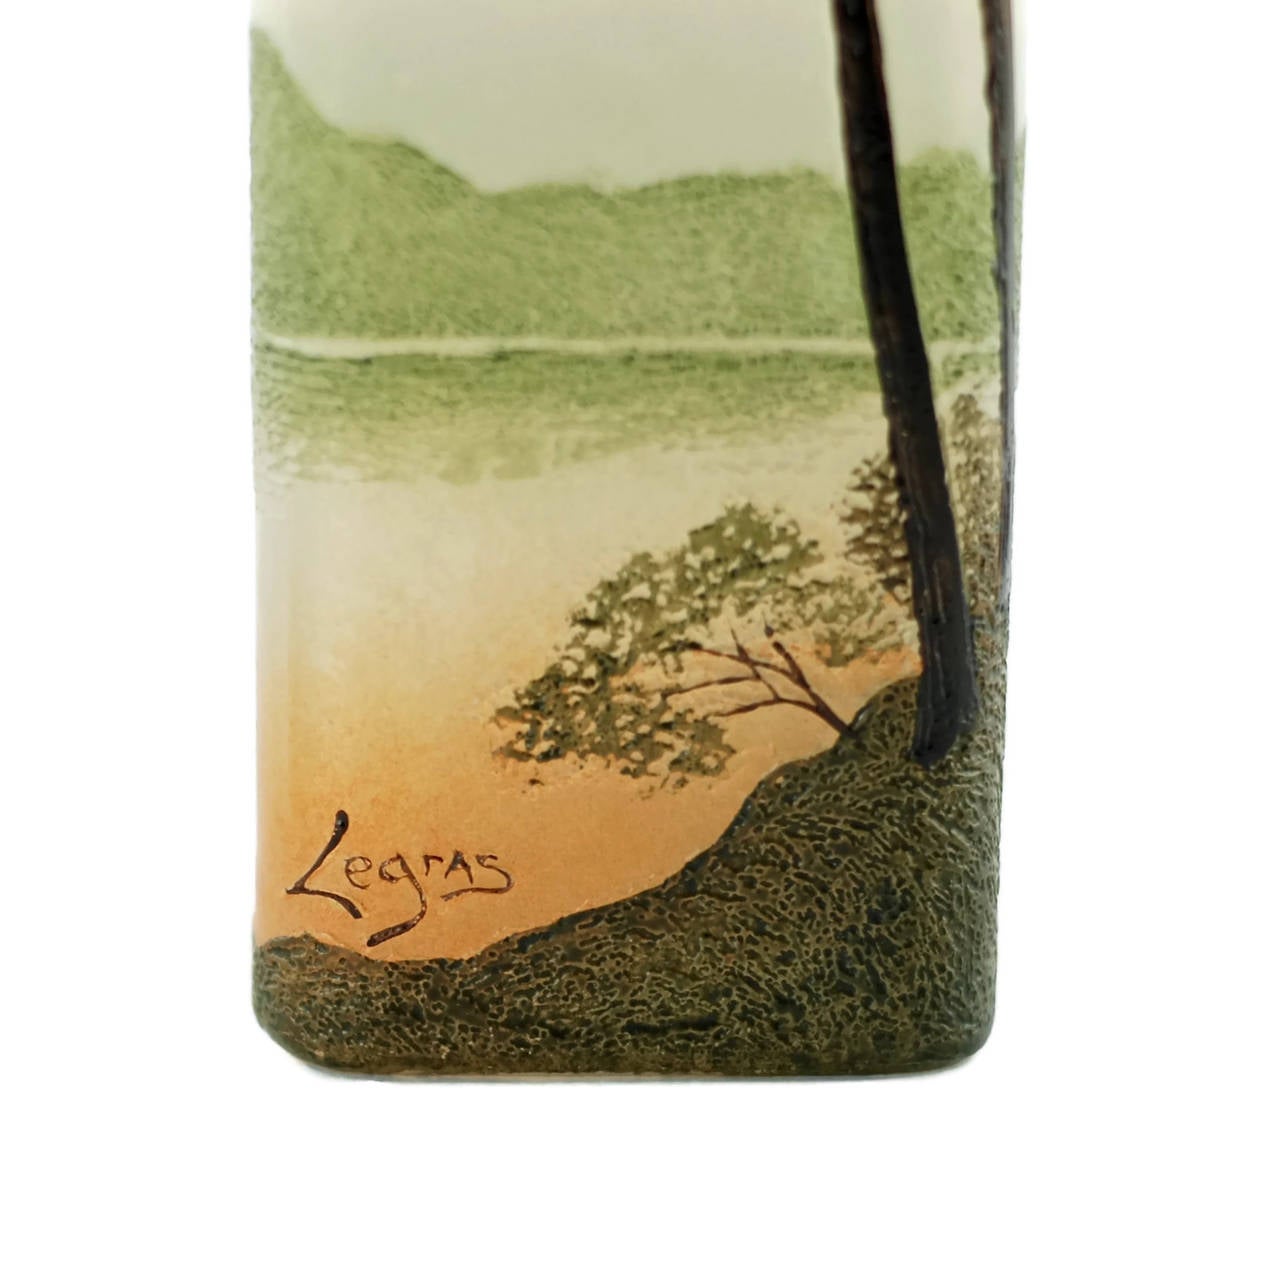 Art Glass Art Nouveau Legras Enameled Cameo Glass Vase with Landscape Motif